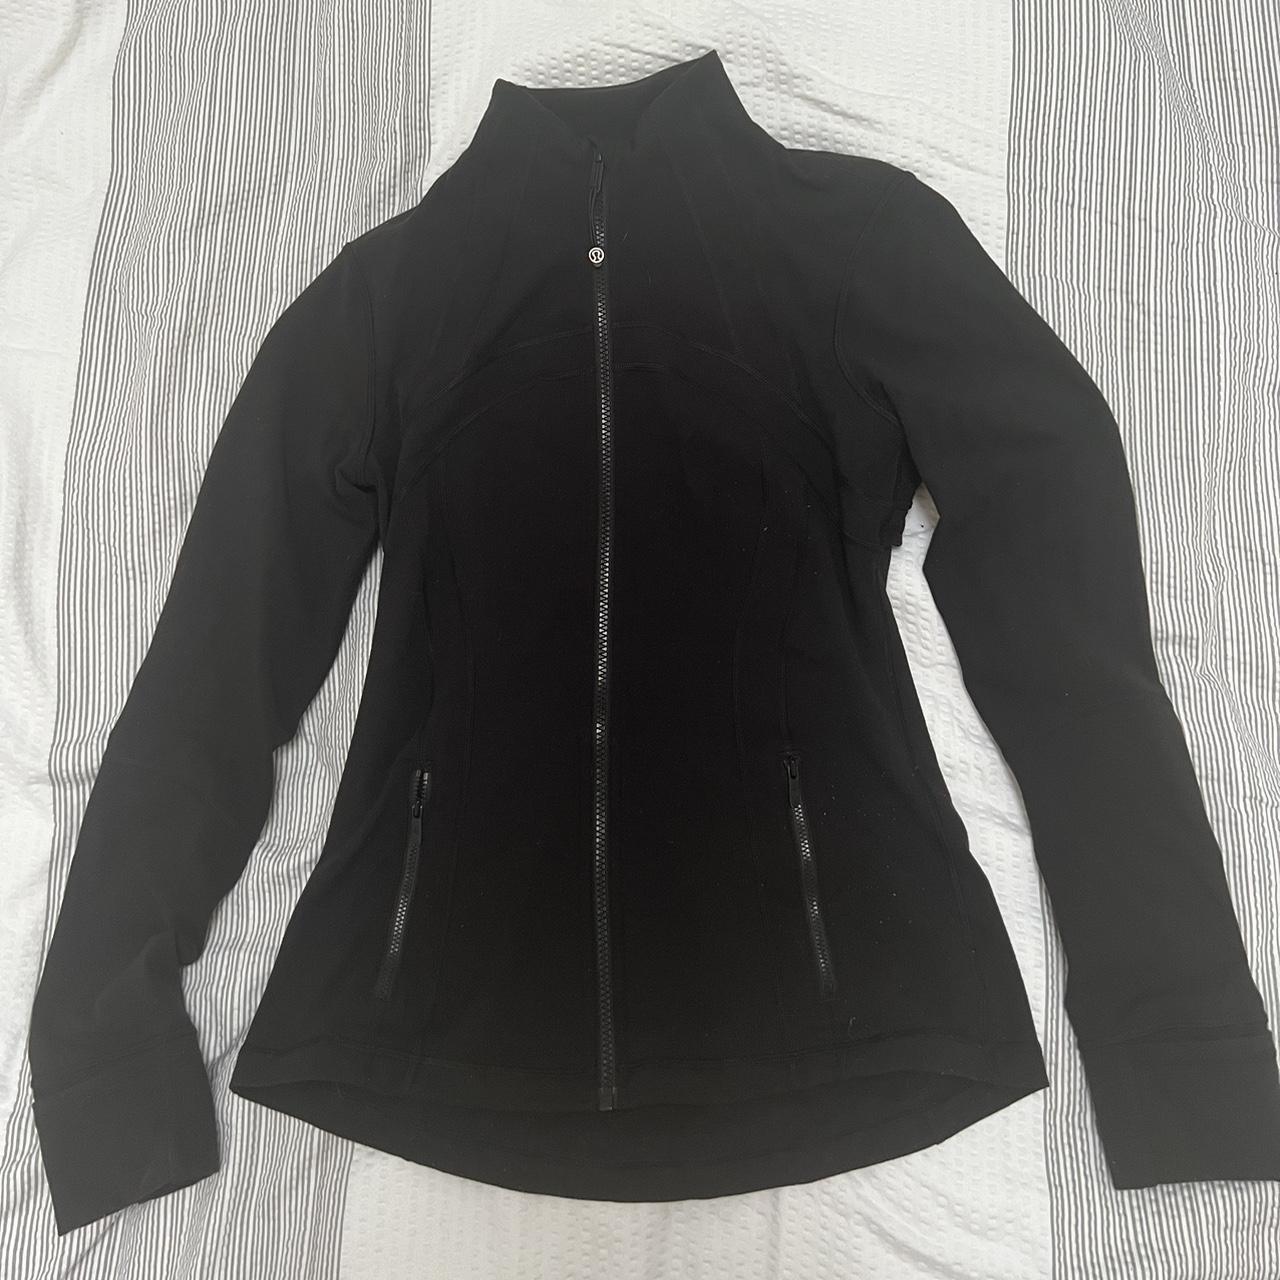 Lululemon black define jacket Size US8 (fits UK... - Depop